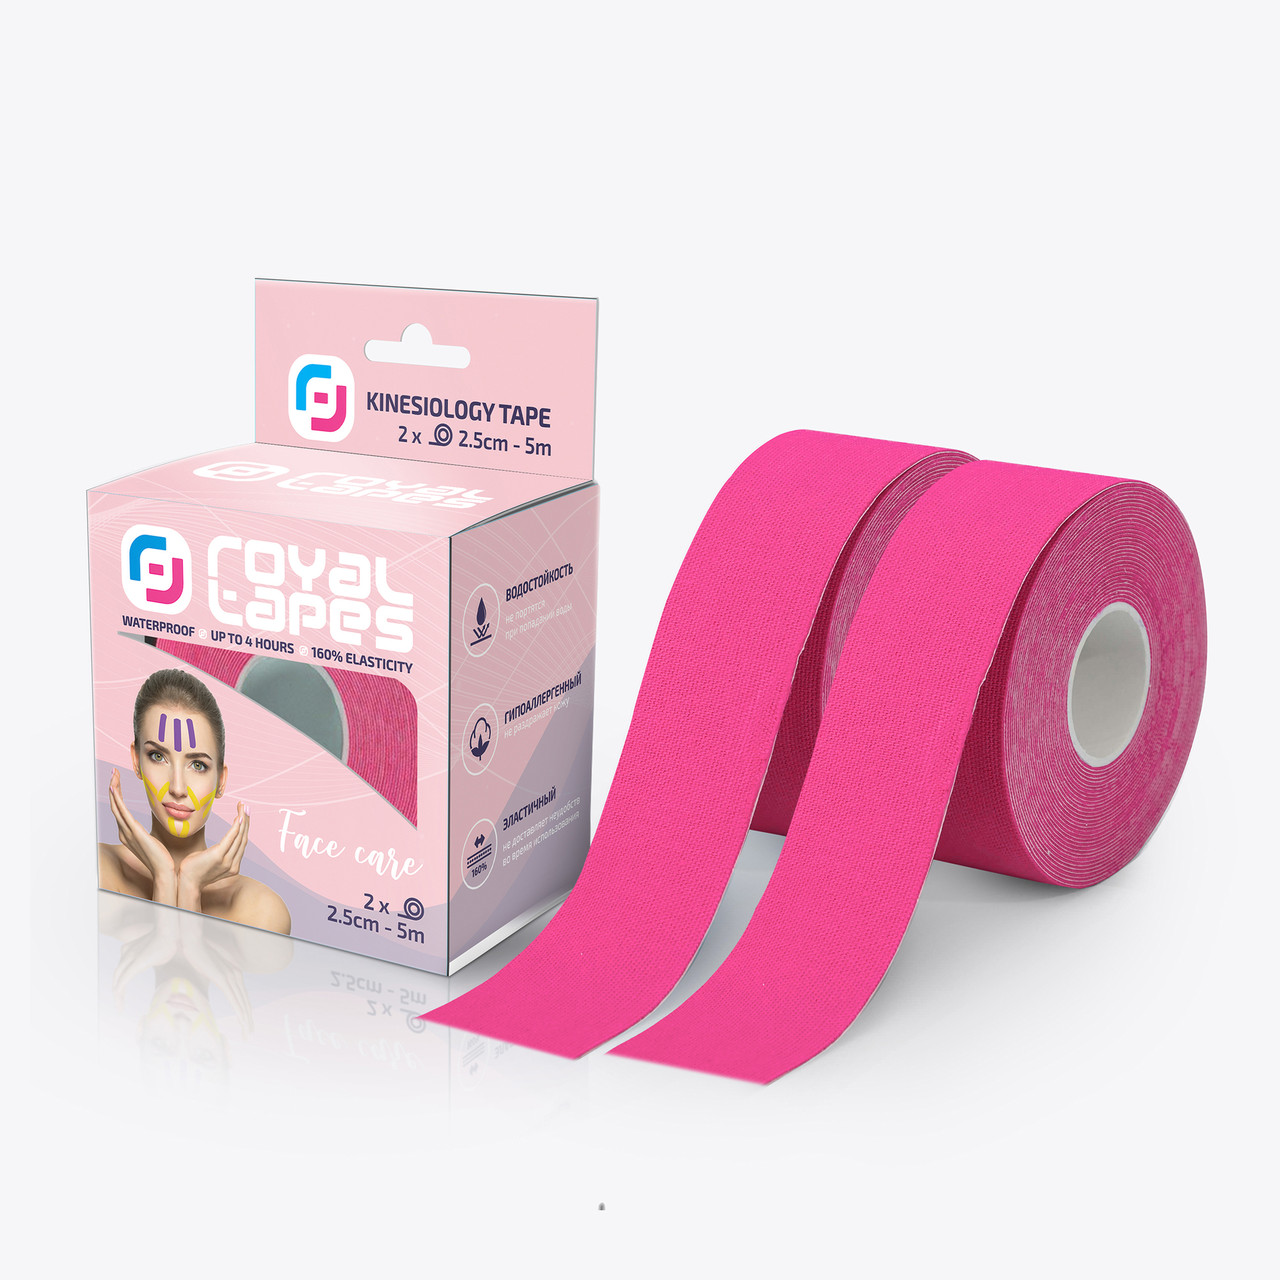 Кинезио тейп для лица Royal Tapes face care набор 2 шт. - Розовый: продажа,  цена в Днепре. Кинезио тейпы и средства для тейпирования от "A2Z" -  1374903556